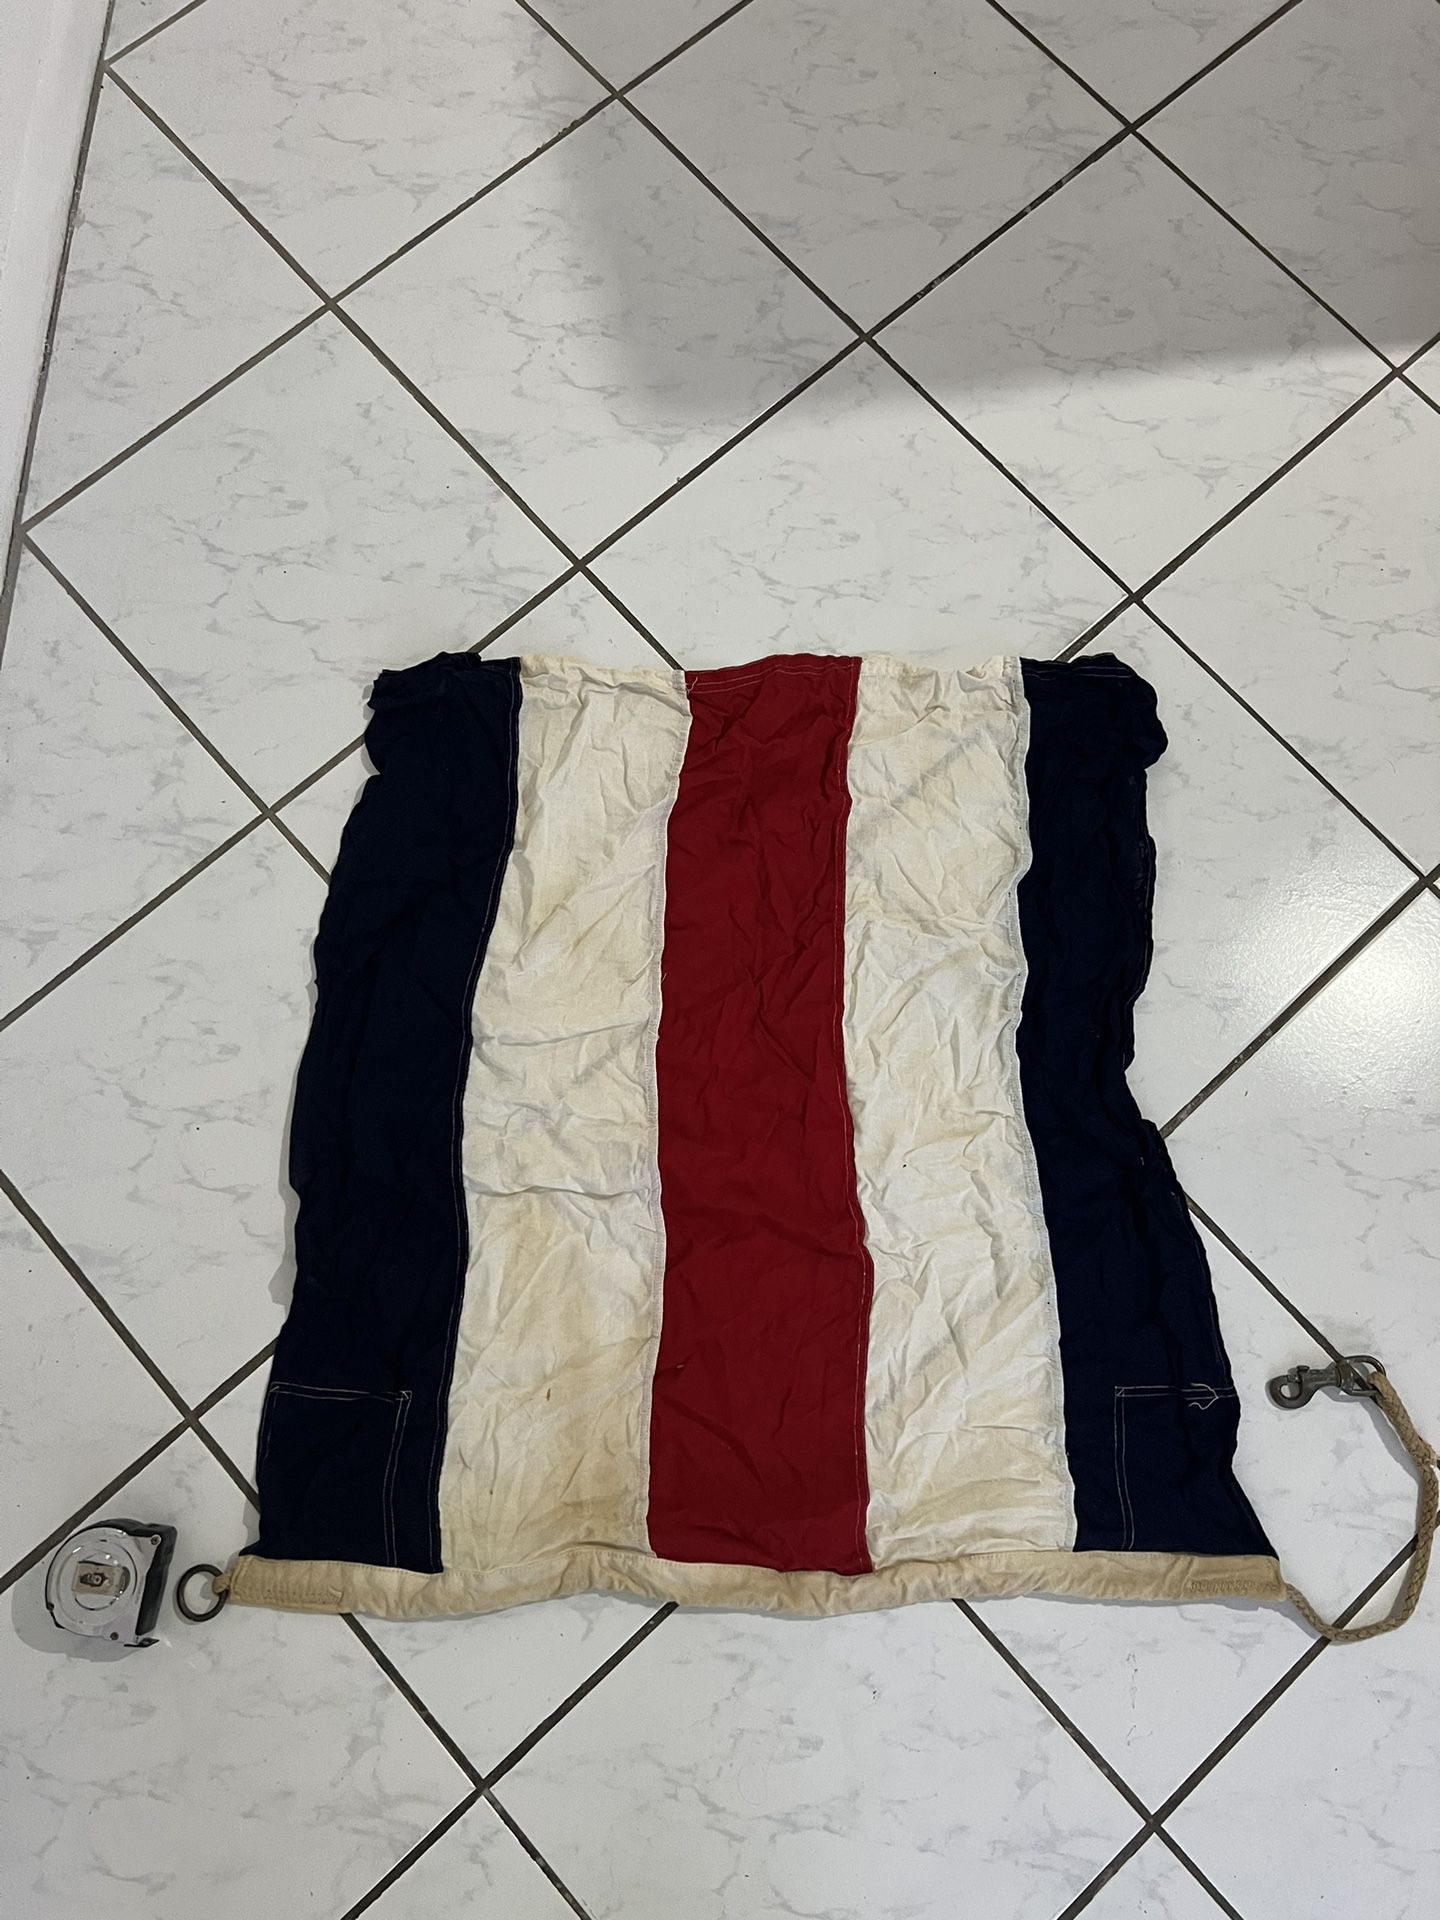 Vintage Nautical Cotton Flag